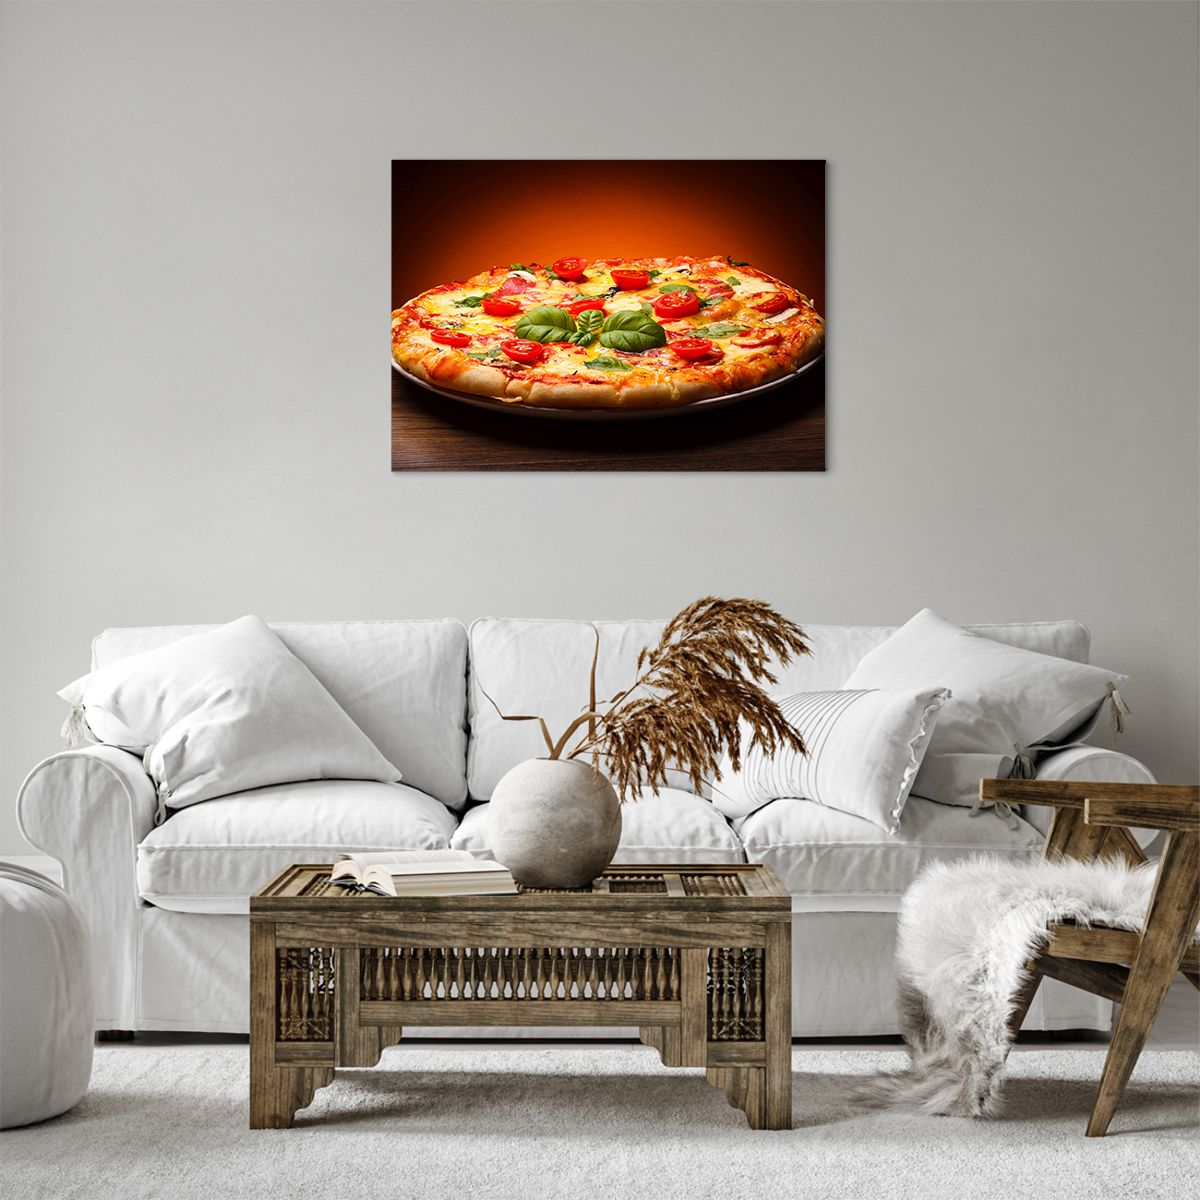 Bild auf Leinwand Gastronomie, Bild auf Leinwand Pizza, Bild auf Leinwand Italien, Bild auf Leinwand Basilikum, Bild auf Leinwand Küche